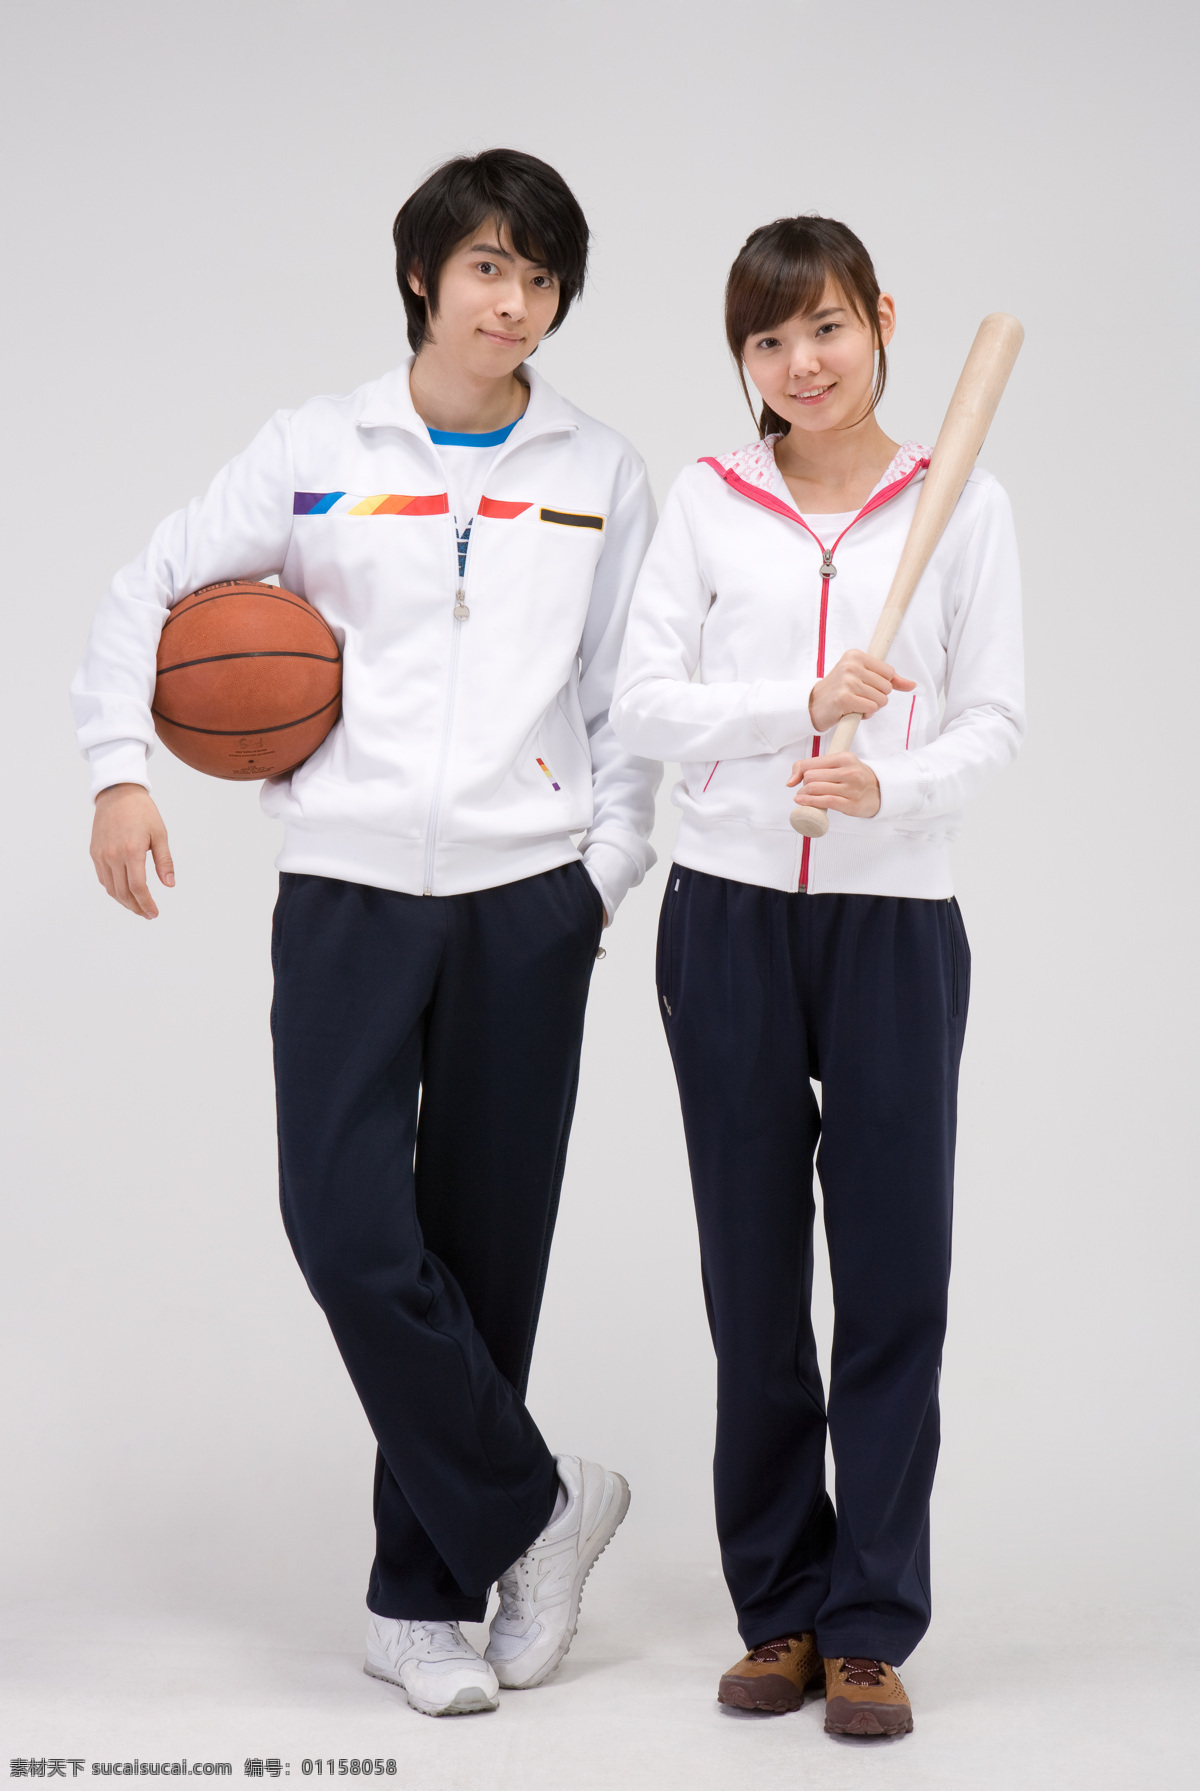 两个 阳光 运动 学生 女生 男生 两个人 并肩 亲密 同学 朋友 友谊 篮球 棍棒 服装 运动装 休闲 表情 微笑 开心 高清图片 生活人物 人物图片